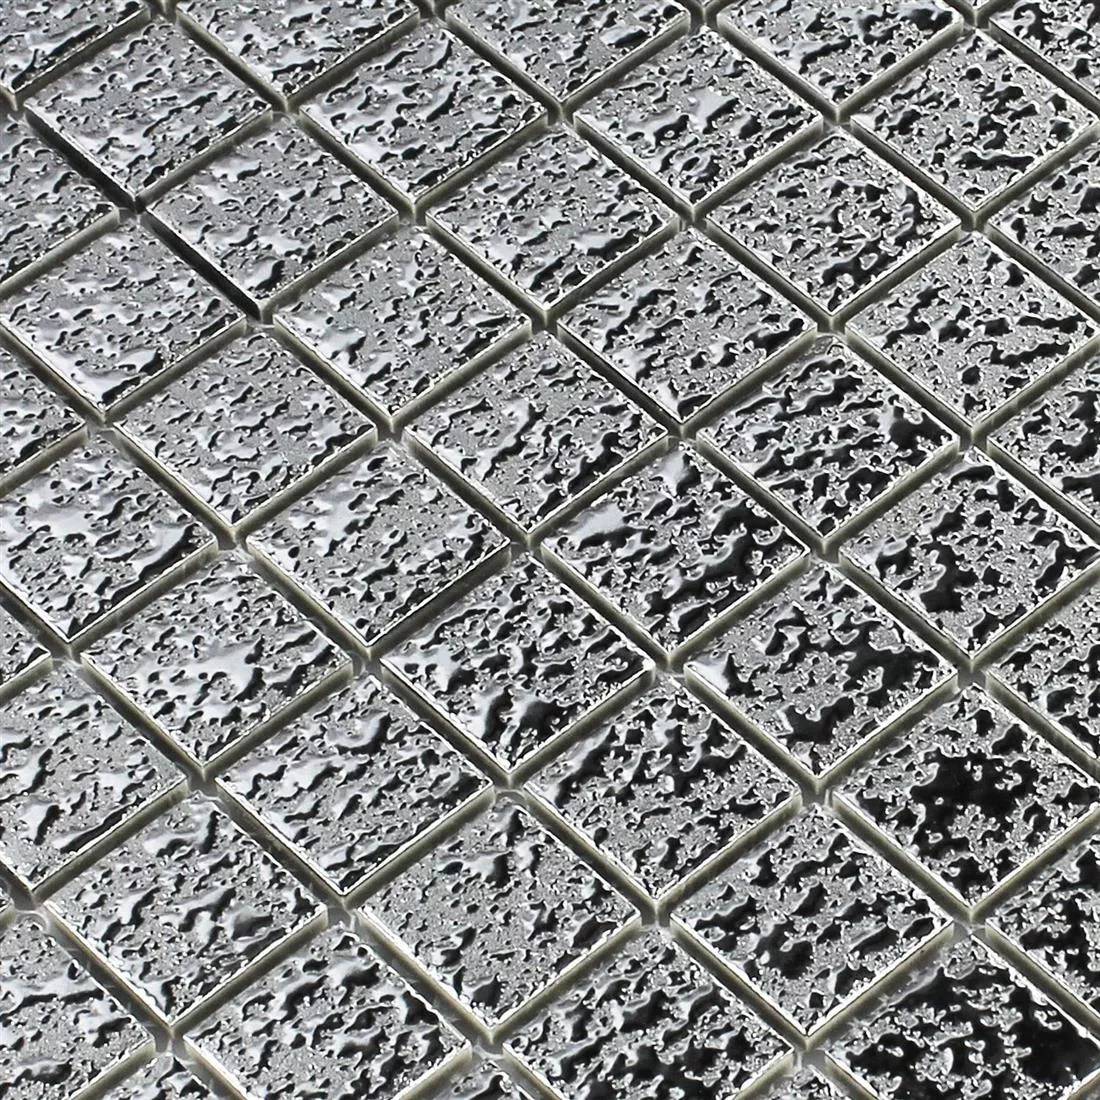 Sample Mosaic Tiles Ceramic Sherbrooke Silver Beaten